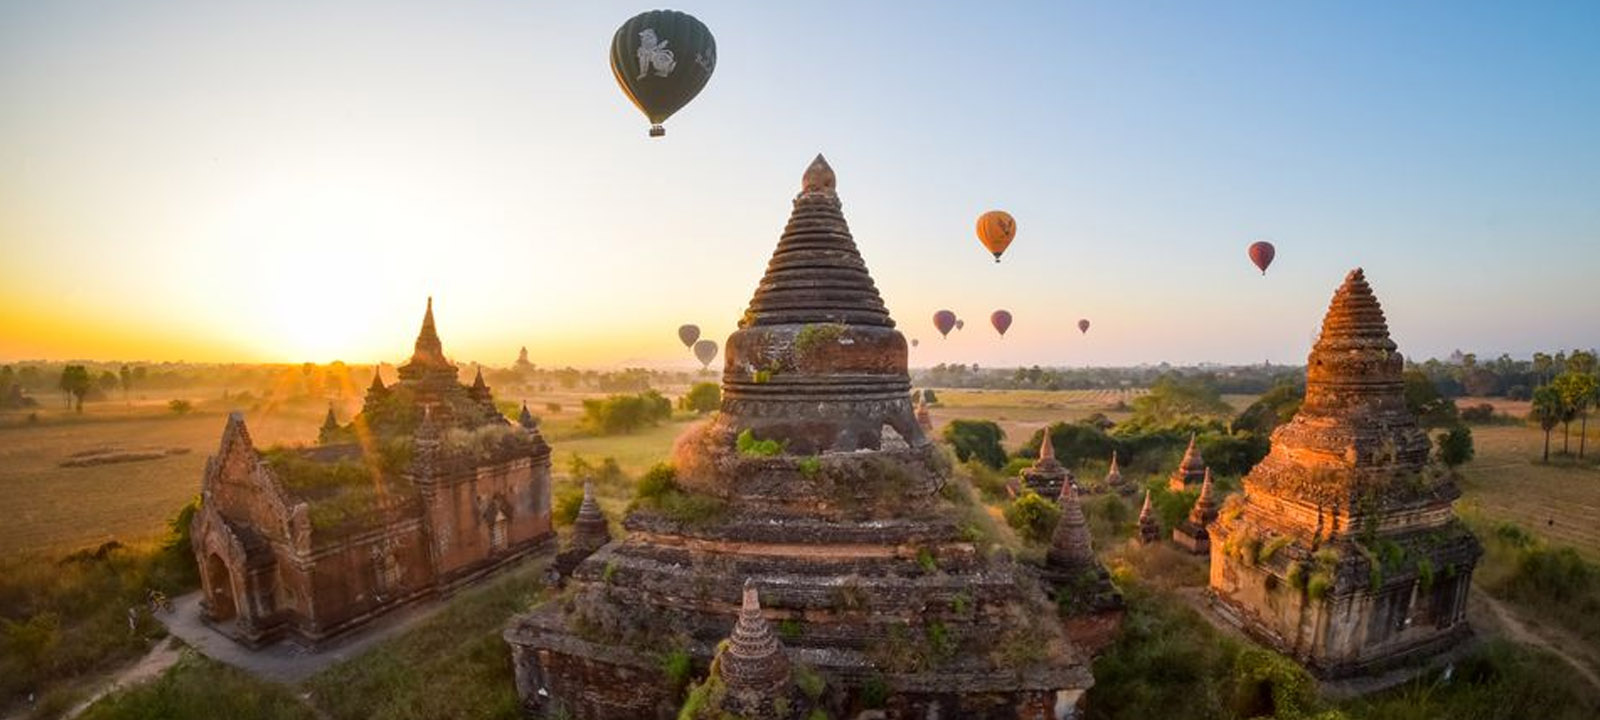 Bagan-Le guide de voyage pour la ville des temples